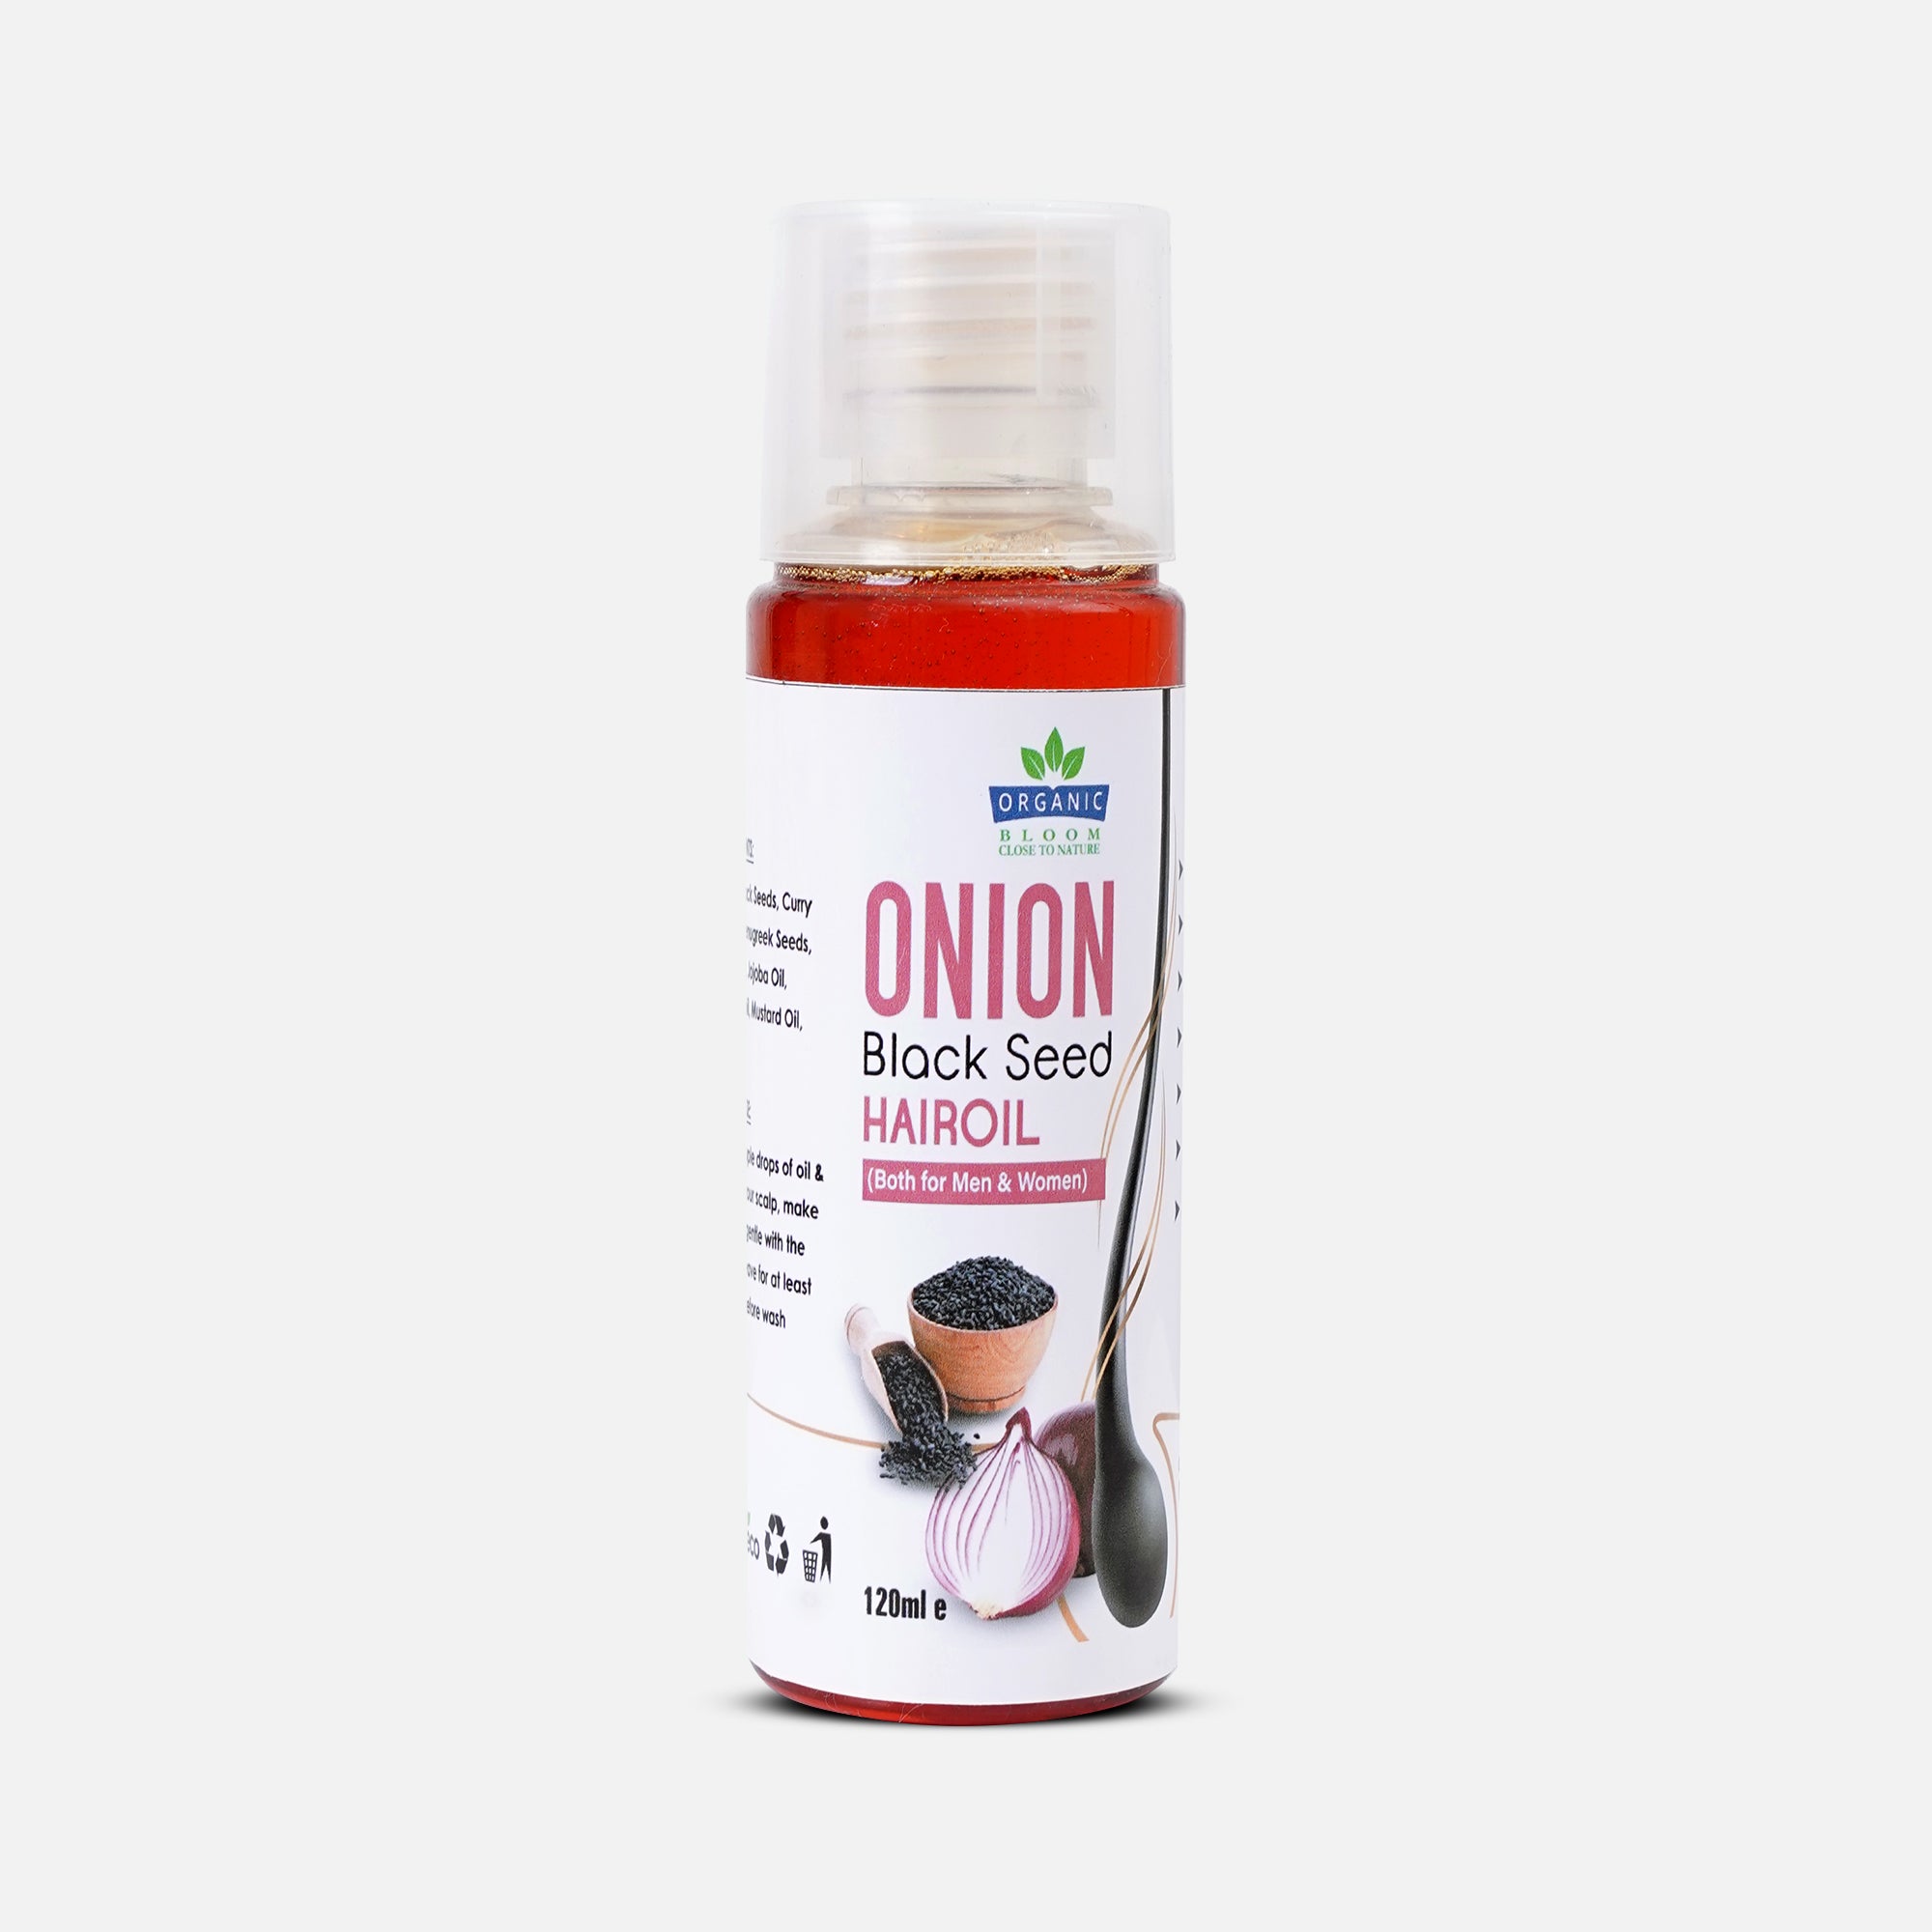 ONION BLACK SEED HAIR OIL - (Both For Men & Women)